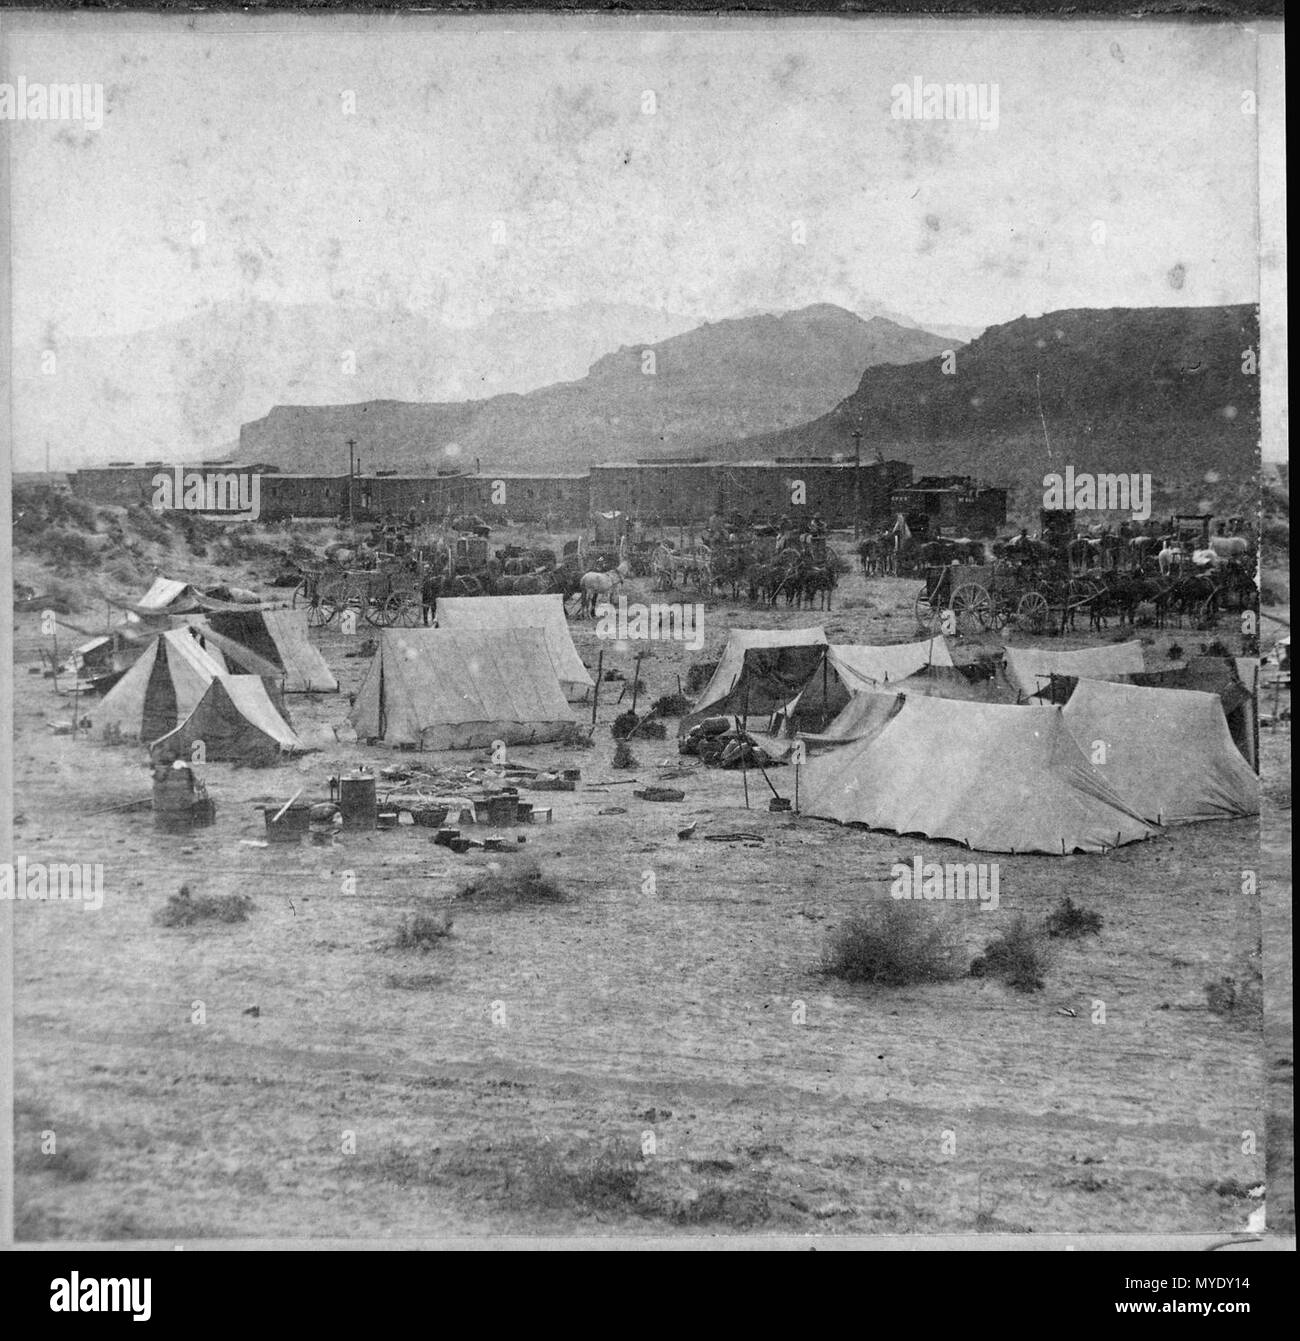 Ende der Spur. In der Nähe von Humboldt River Canyon, Nevada. Campingplatz und Zug der Central Pacific Railroad am Fuß der Mo- Stockfoto